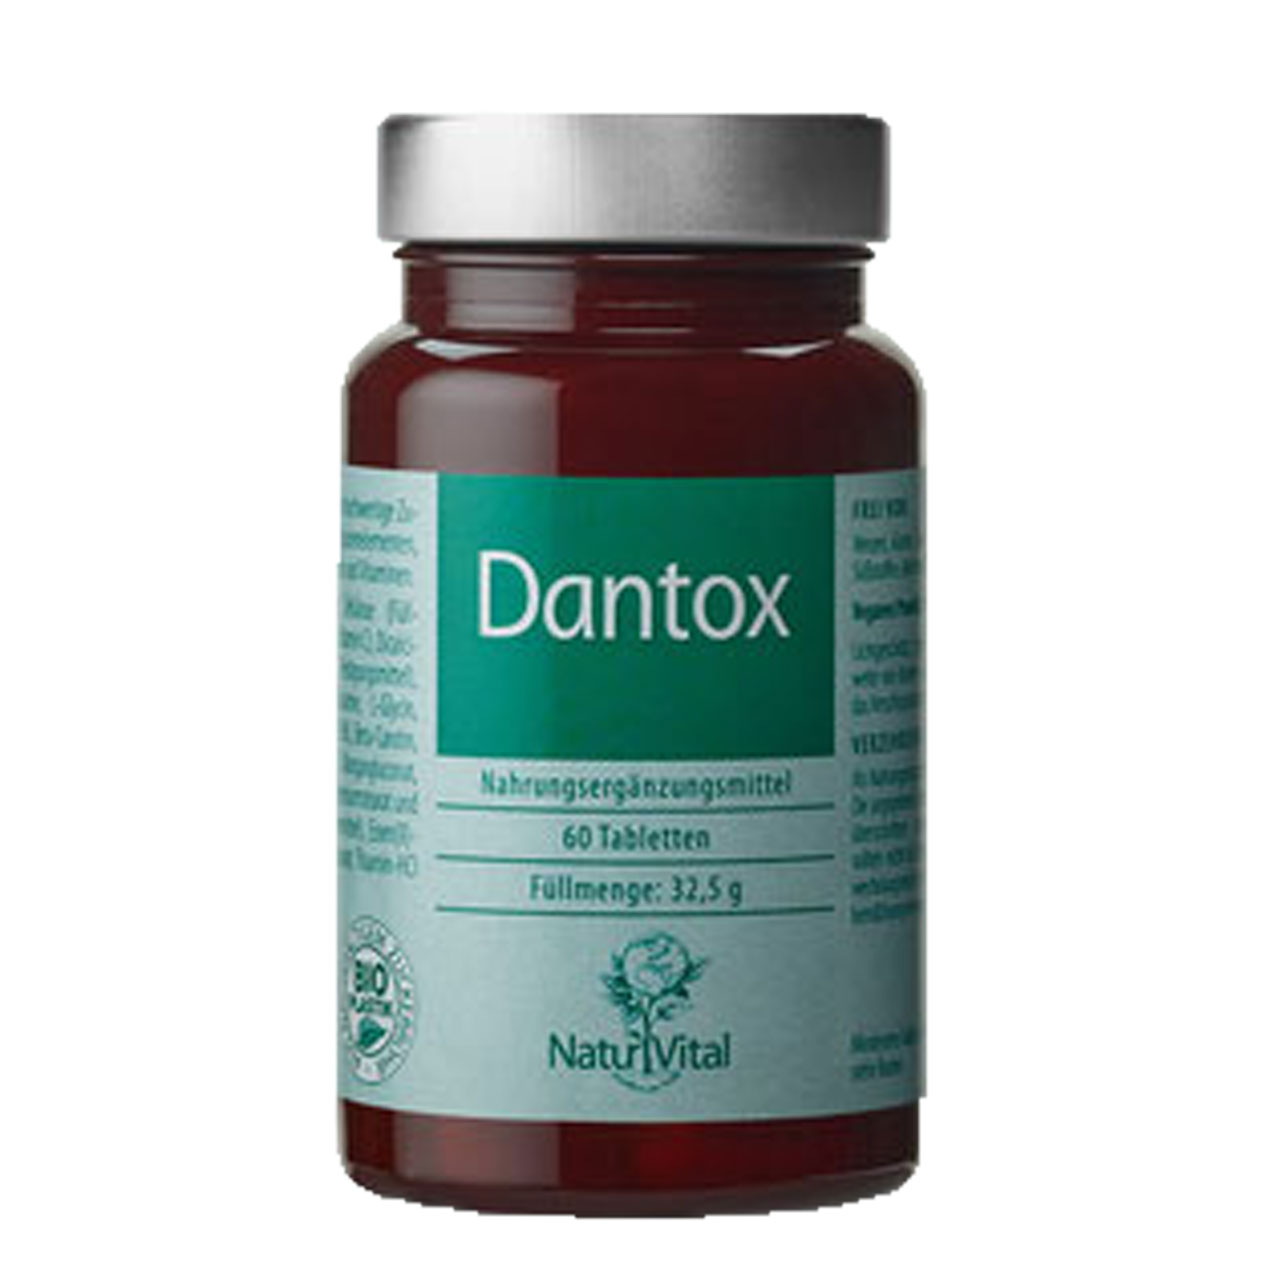 Dantox von Natur Vital beinhaltet 60 Tabletten